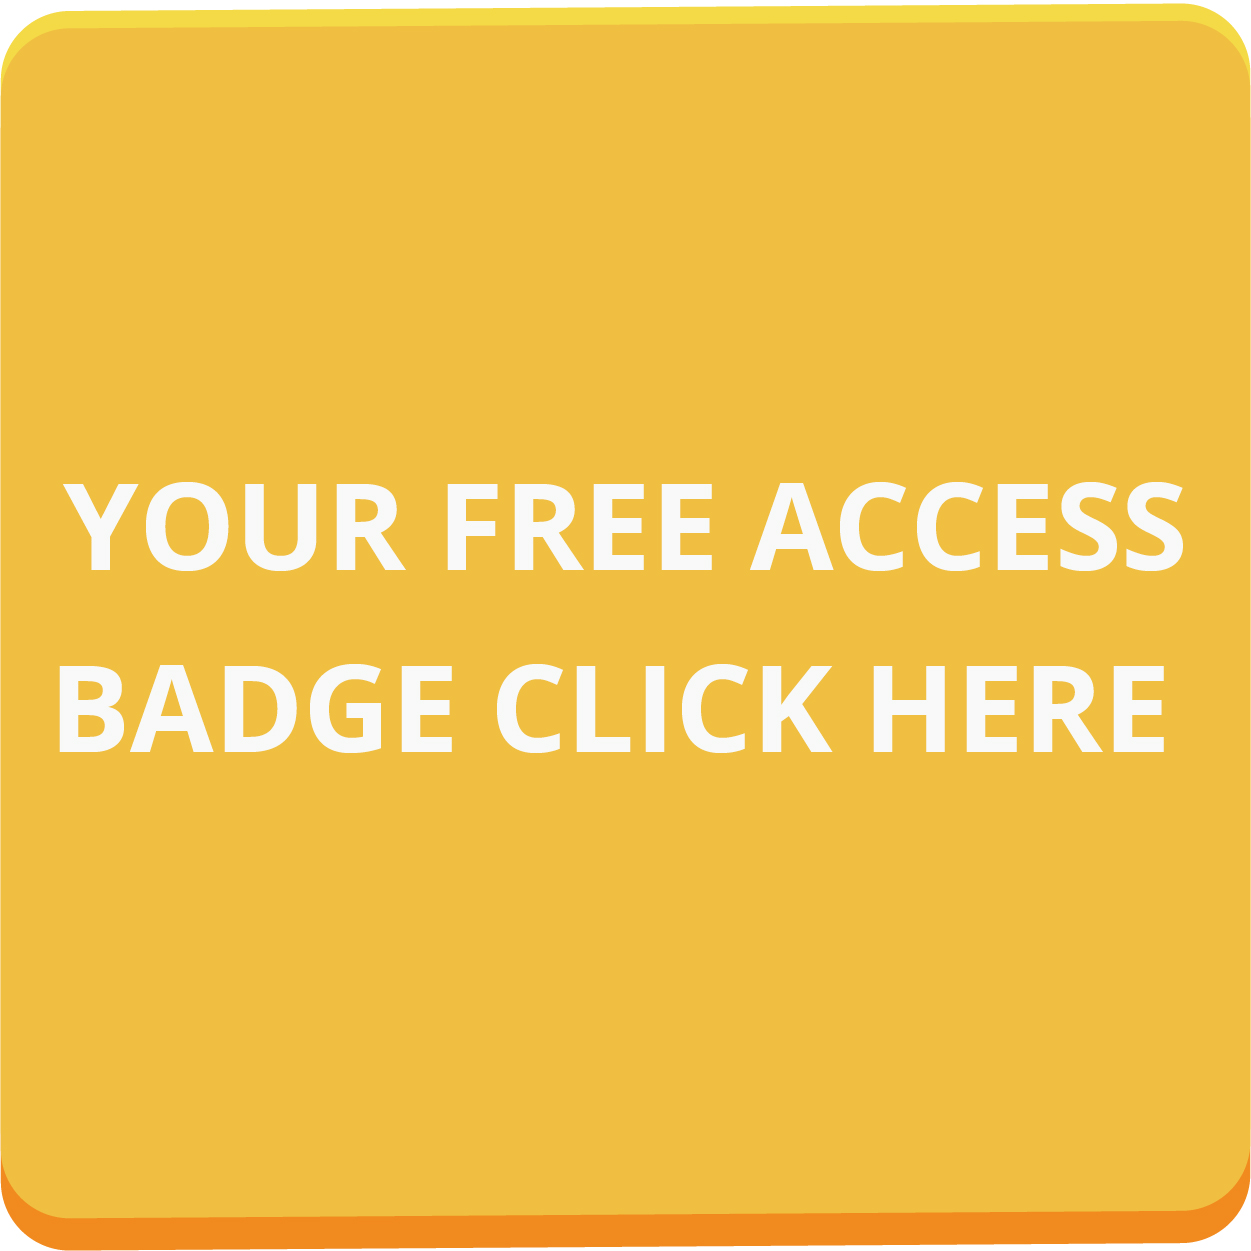 Windoor Expo_Get your free badge